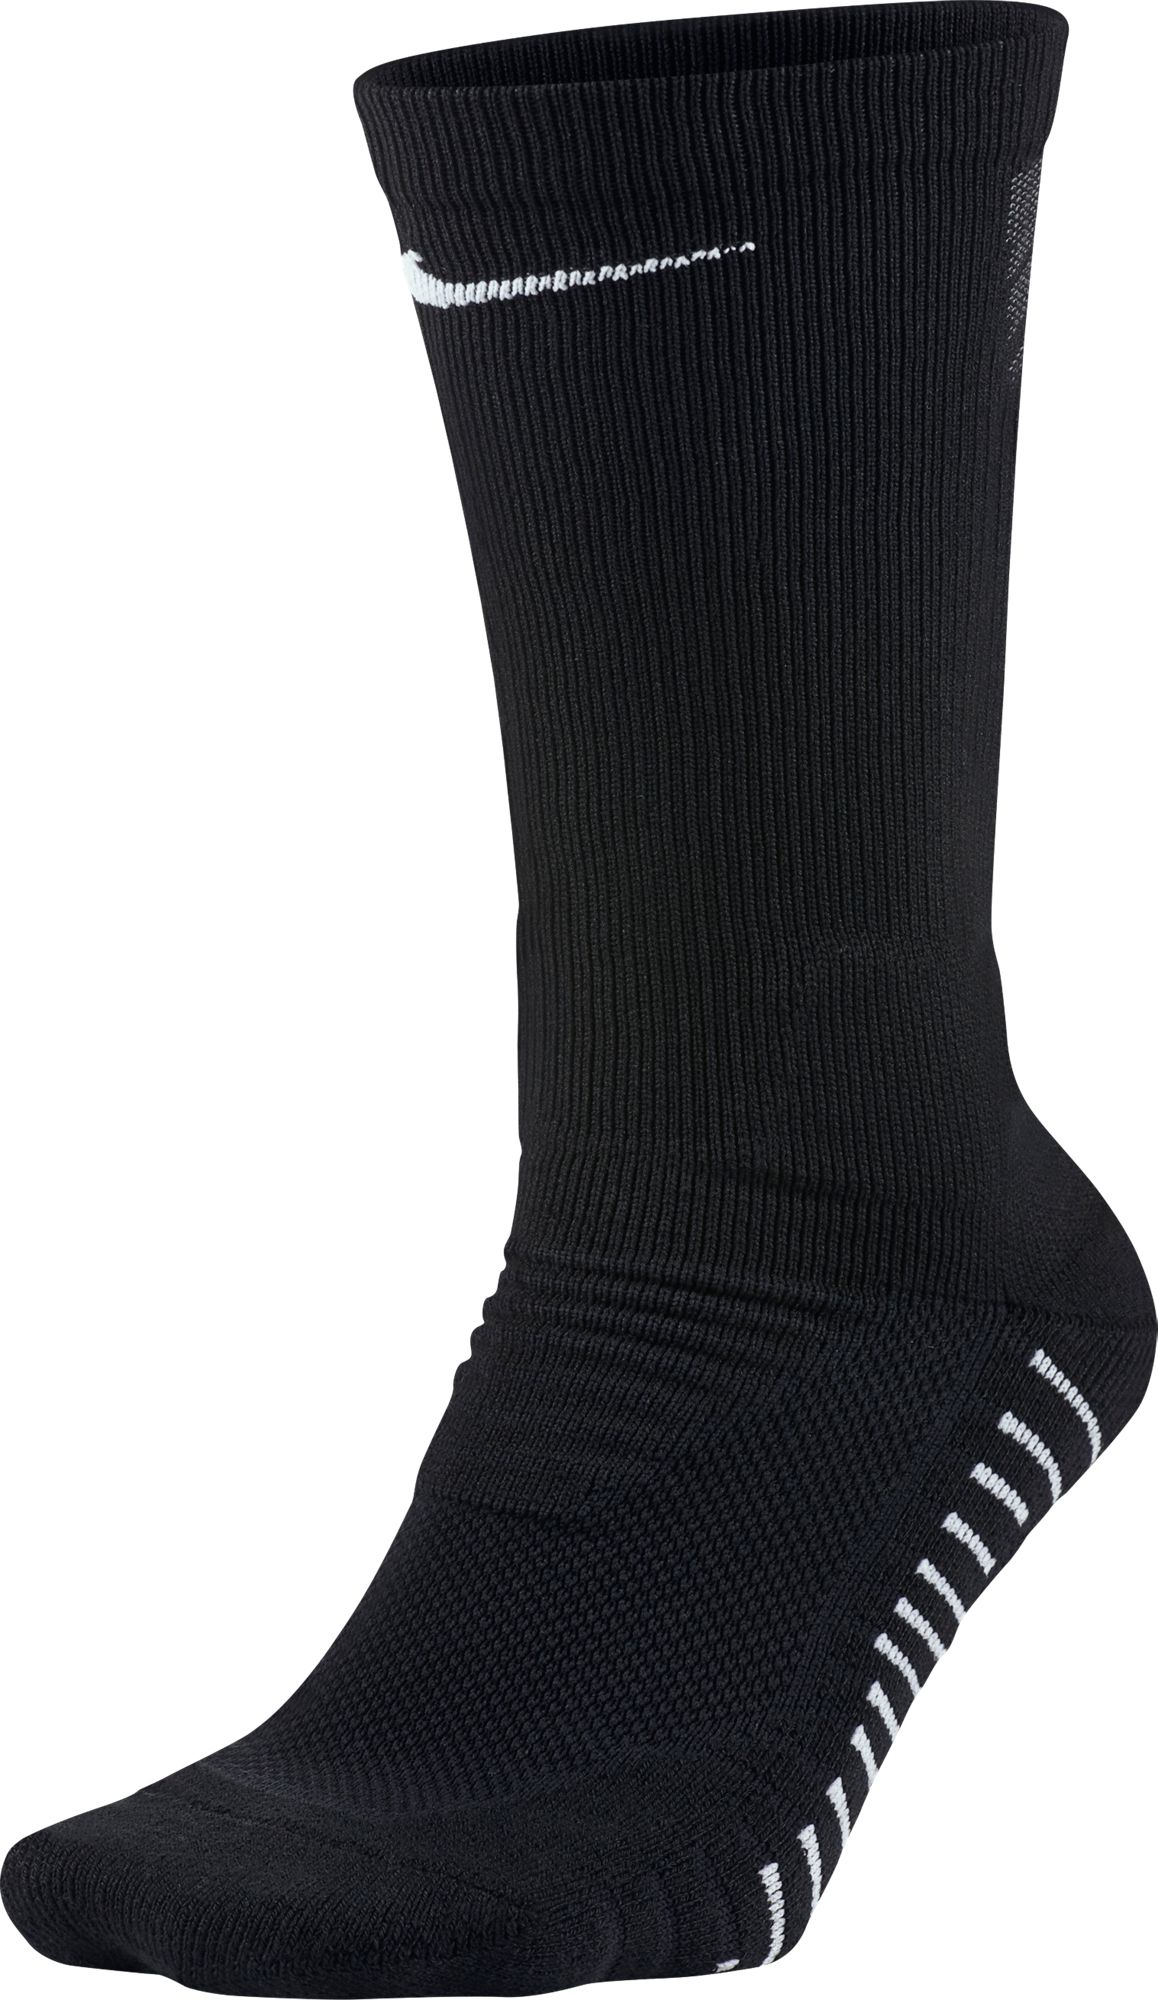 nike mid calf socks black